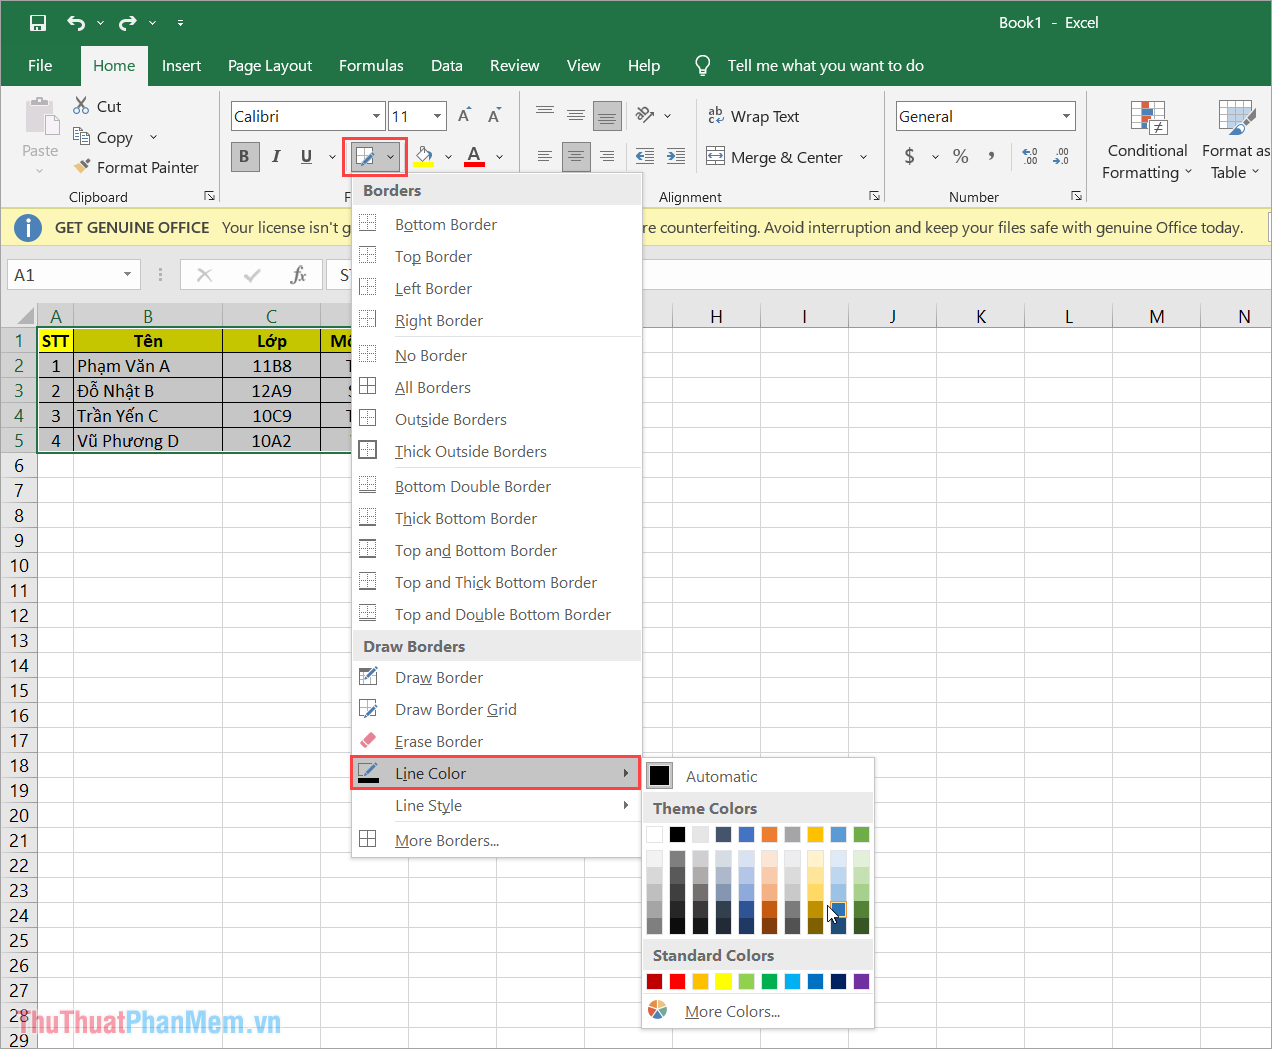 Chọn Line Color để đặt màu sắc cho đường viền kẻ trong Excel